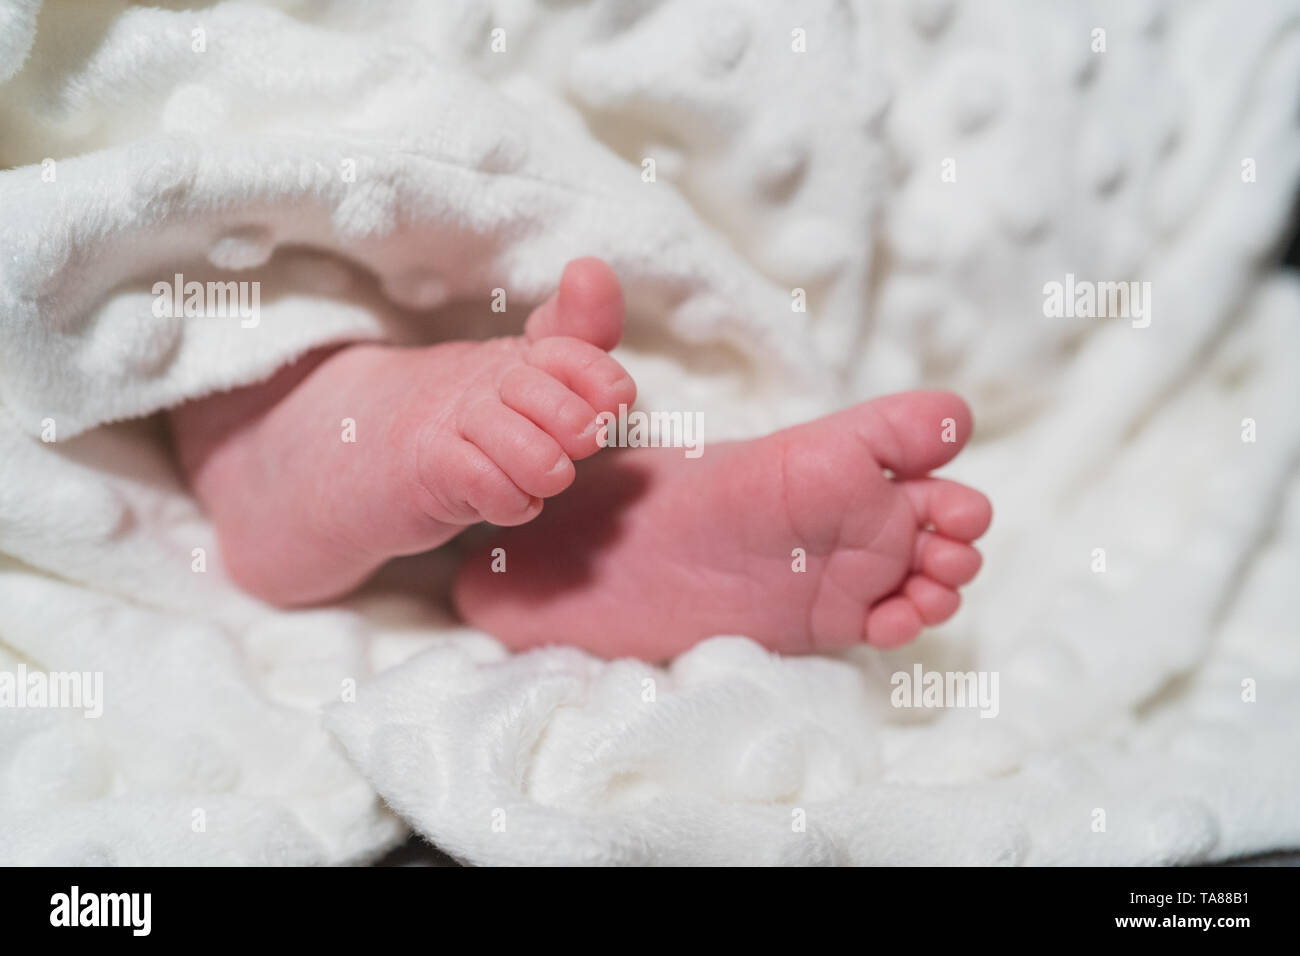 New Born Baby piccoli piedi su coltre bianca. Famiglia, vita nuova, infanzia, inizio concetto. Foto Stock